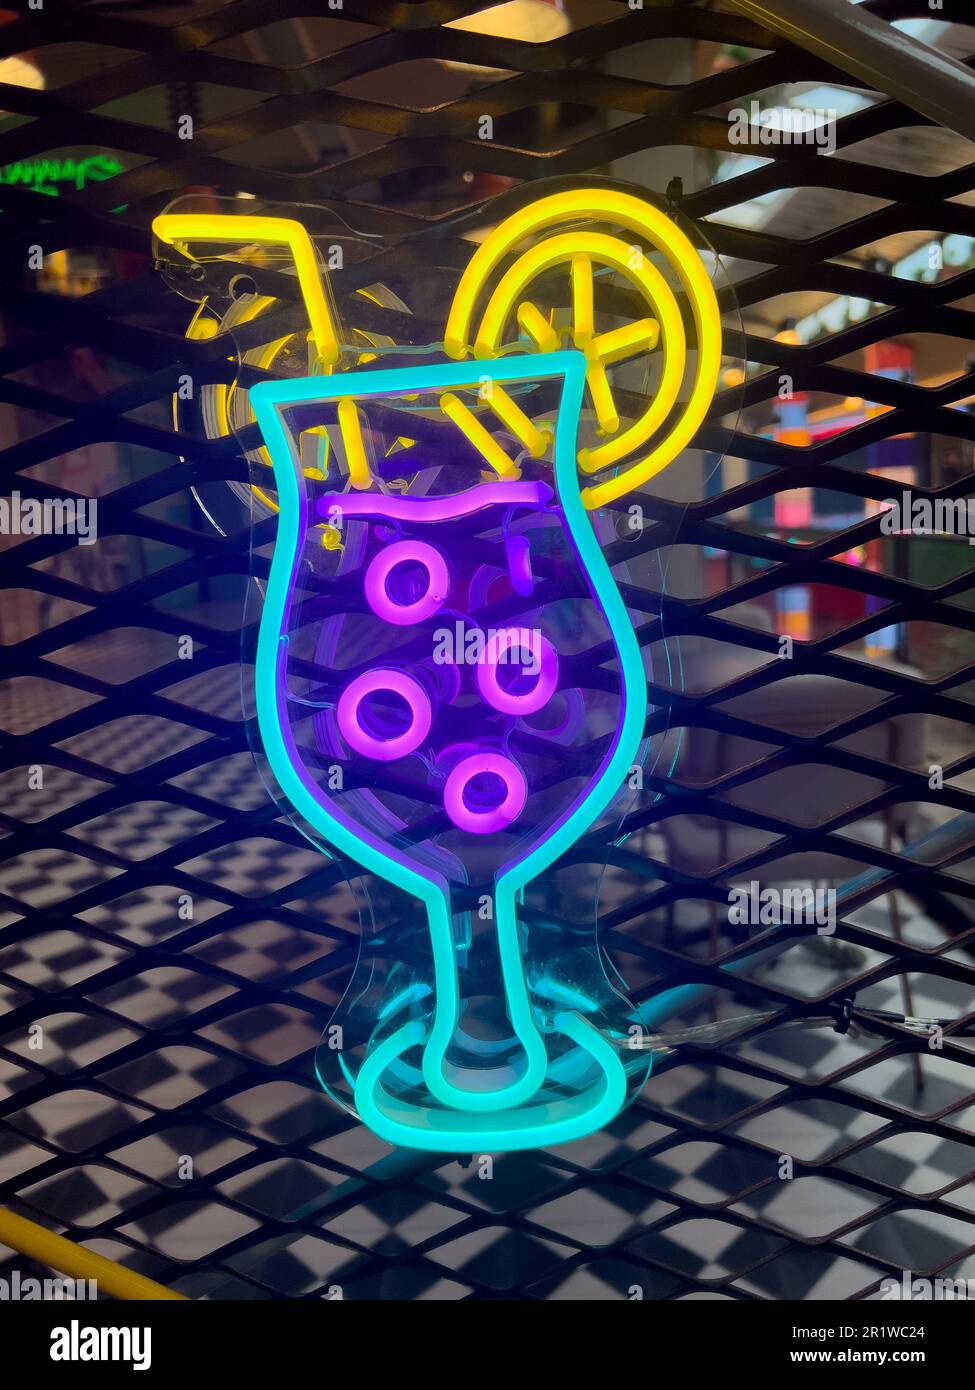 Cocktails éclairés. Collection colorée de symboles ou tableaux de signalisation lumineux avec néon coloré pour café, restaurant, motel, bar à cocktails Banque D'Images